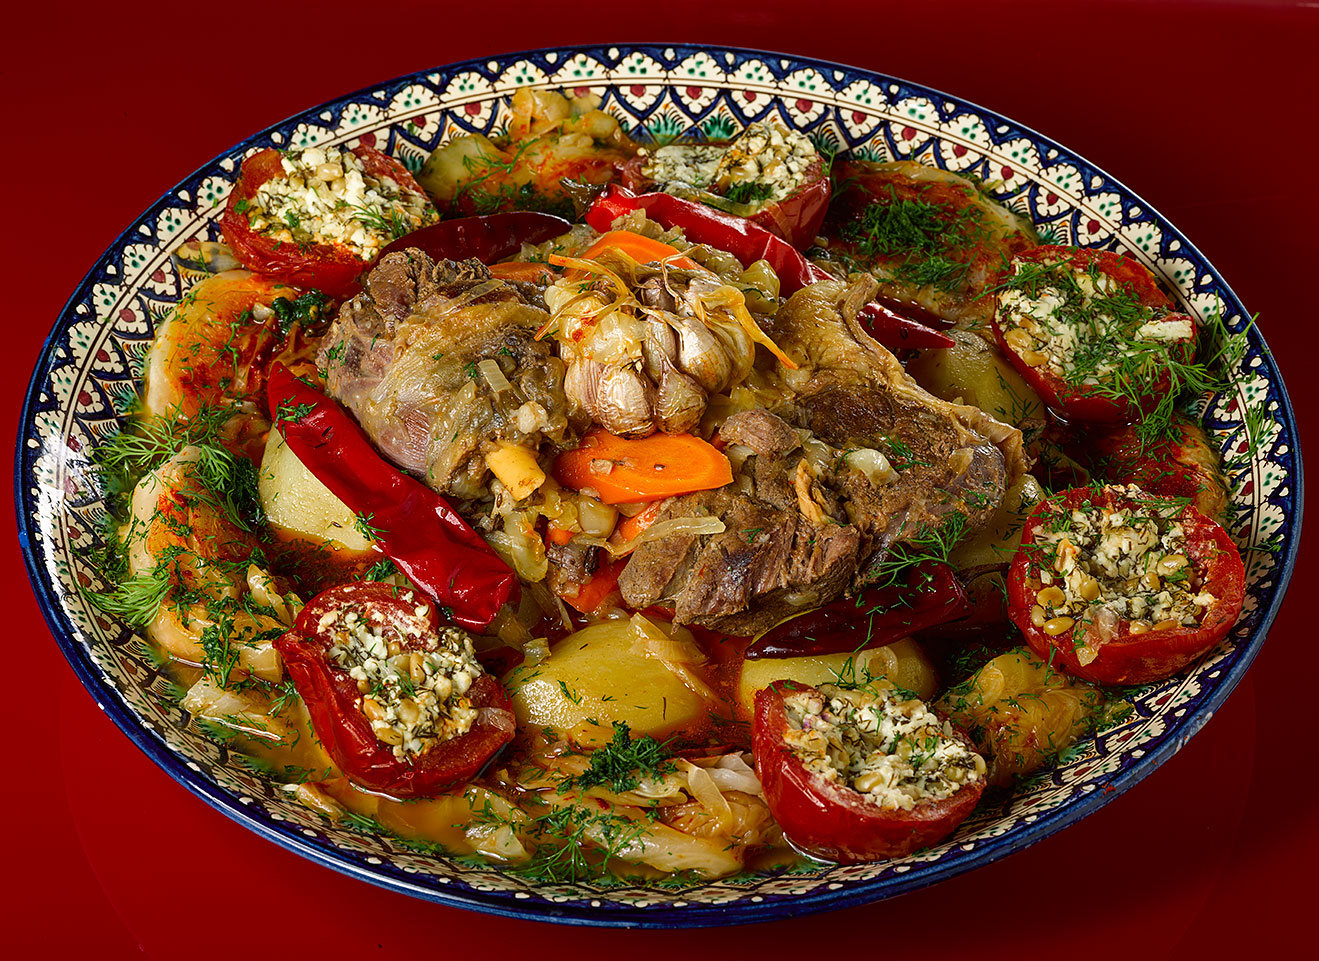 Первые Блюда Узбекской Кухни Рецепты С Фото